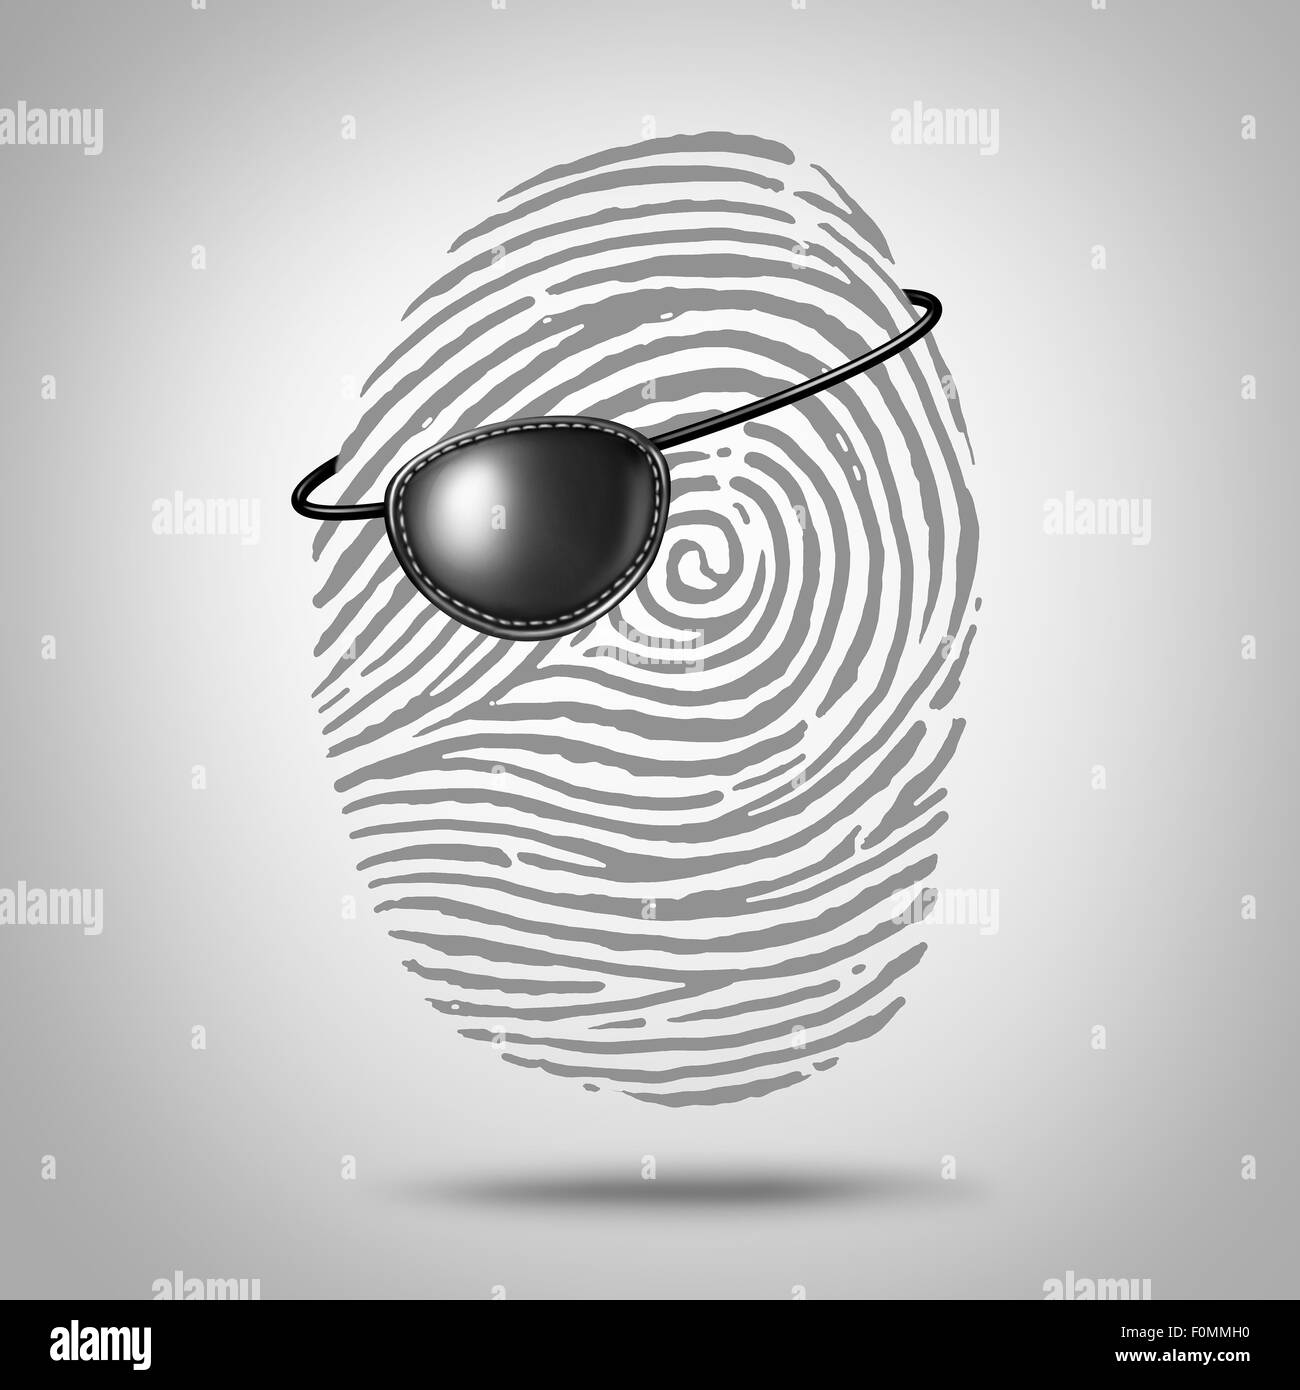 Privacidad concepto de piratería y robo de identidad como un símbolo de huellas o icono de huella digital con un pirata parche en el ojo como una metáfora para la seguridad de los datos privados de información personal en línea de riesgo. Foto de stock